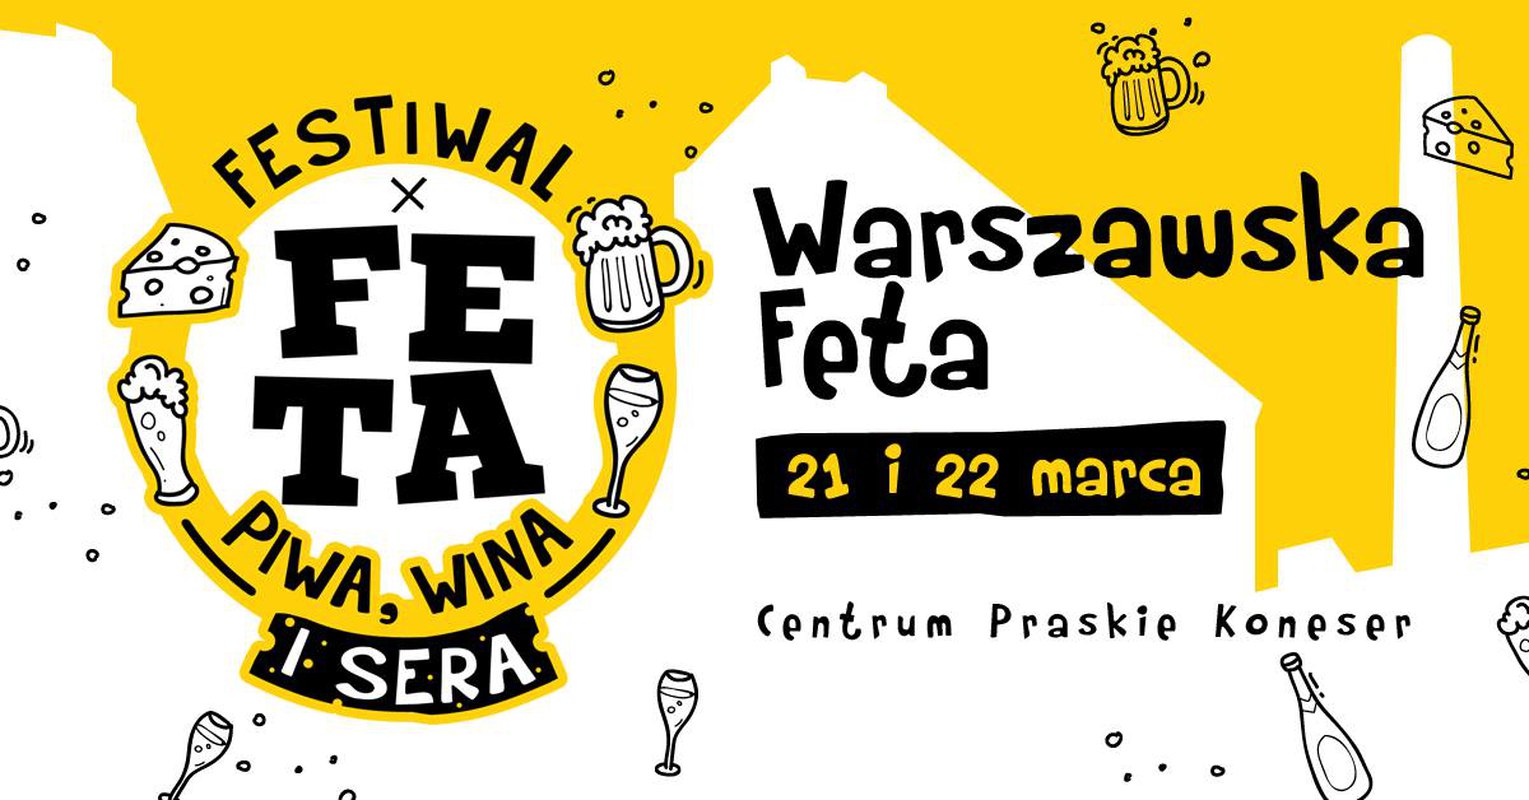 Warszawska Feta. Festiwal Piwa, Wina i Sera